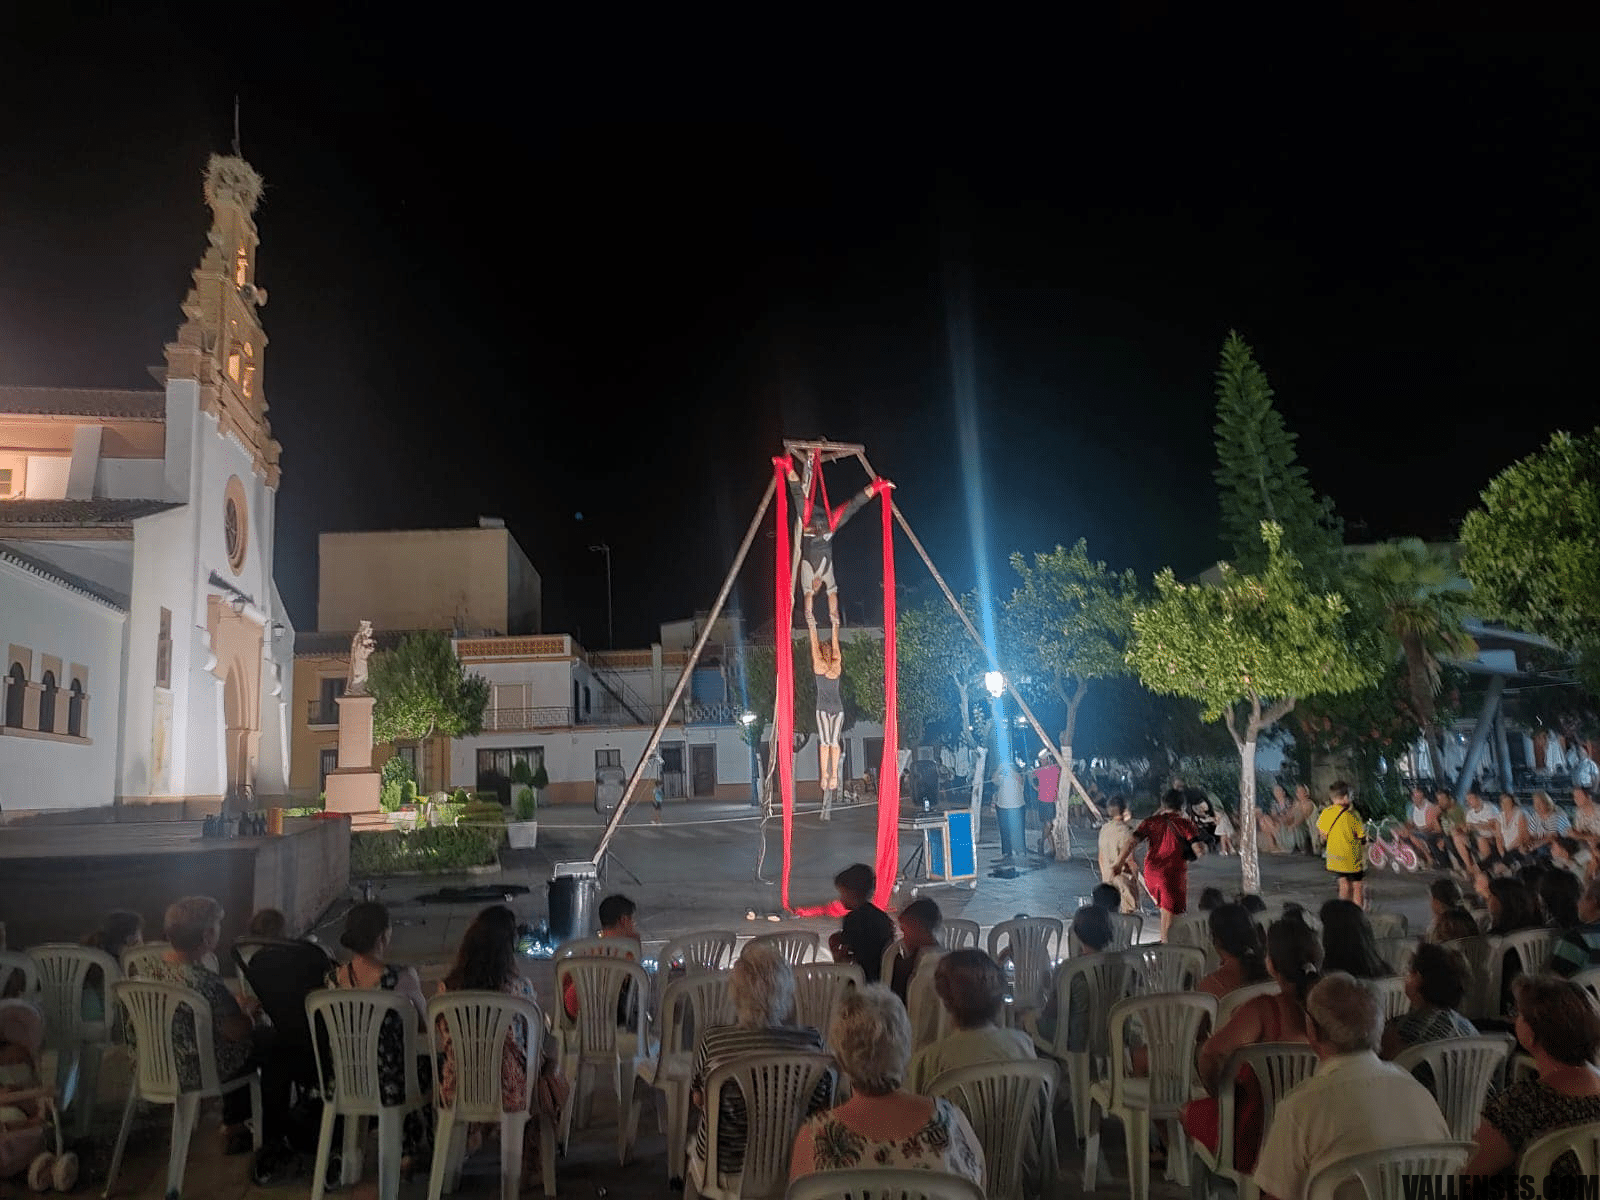 Circus Show" A Medida de la Cia. Eva Escudier y el Mago Transilvano Daniel Moldovan encantan al público de San José del Valle